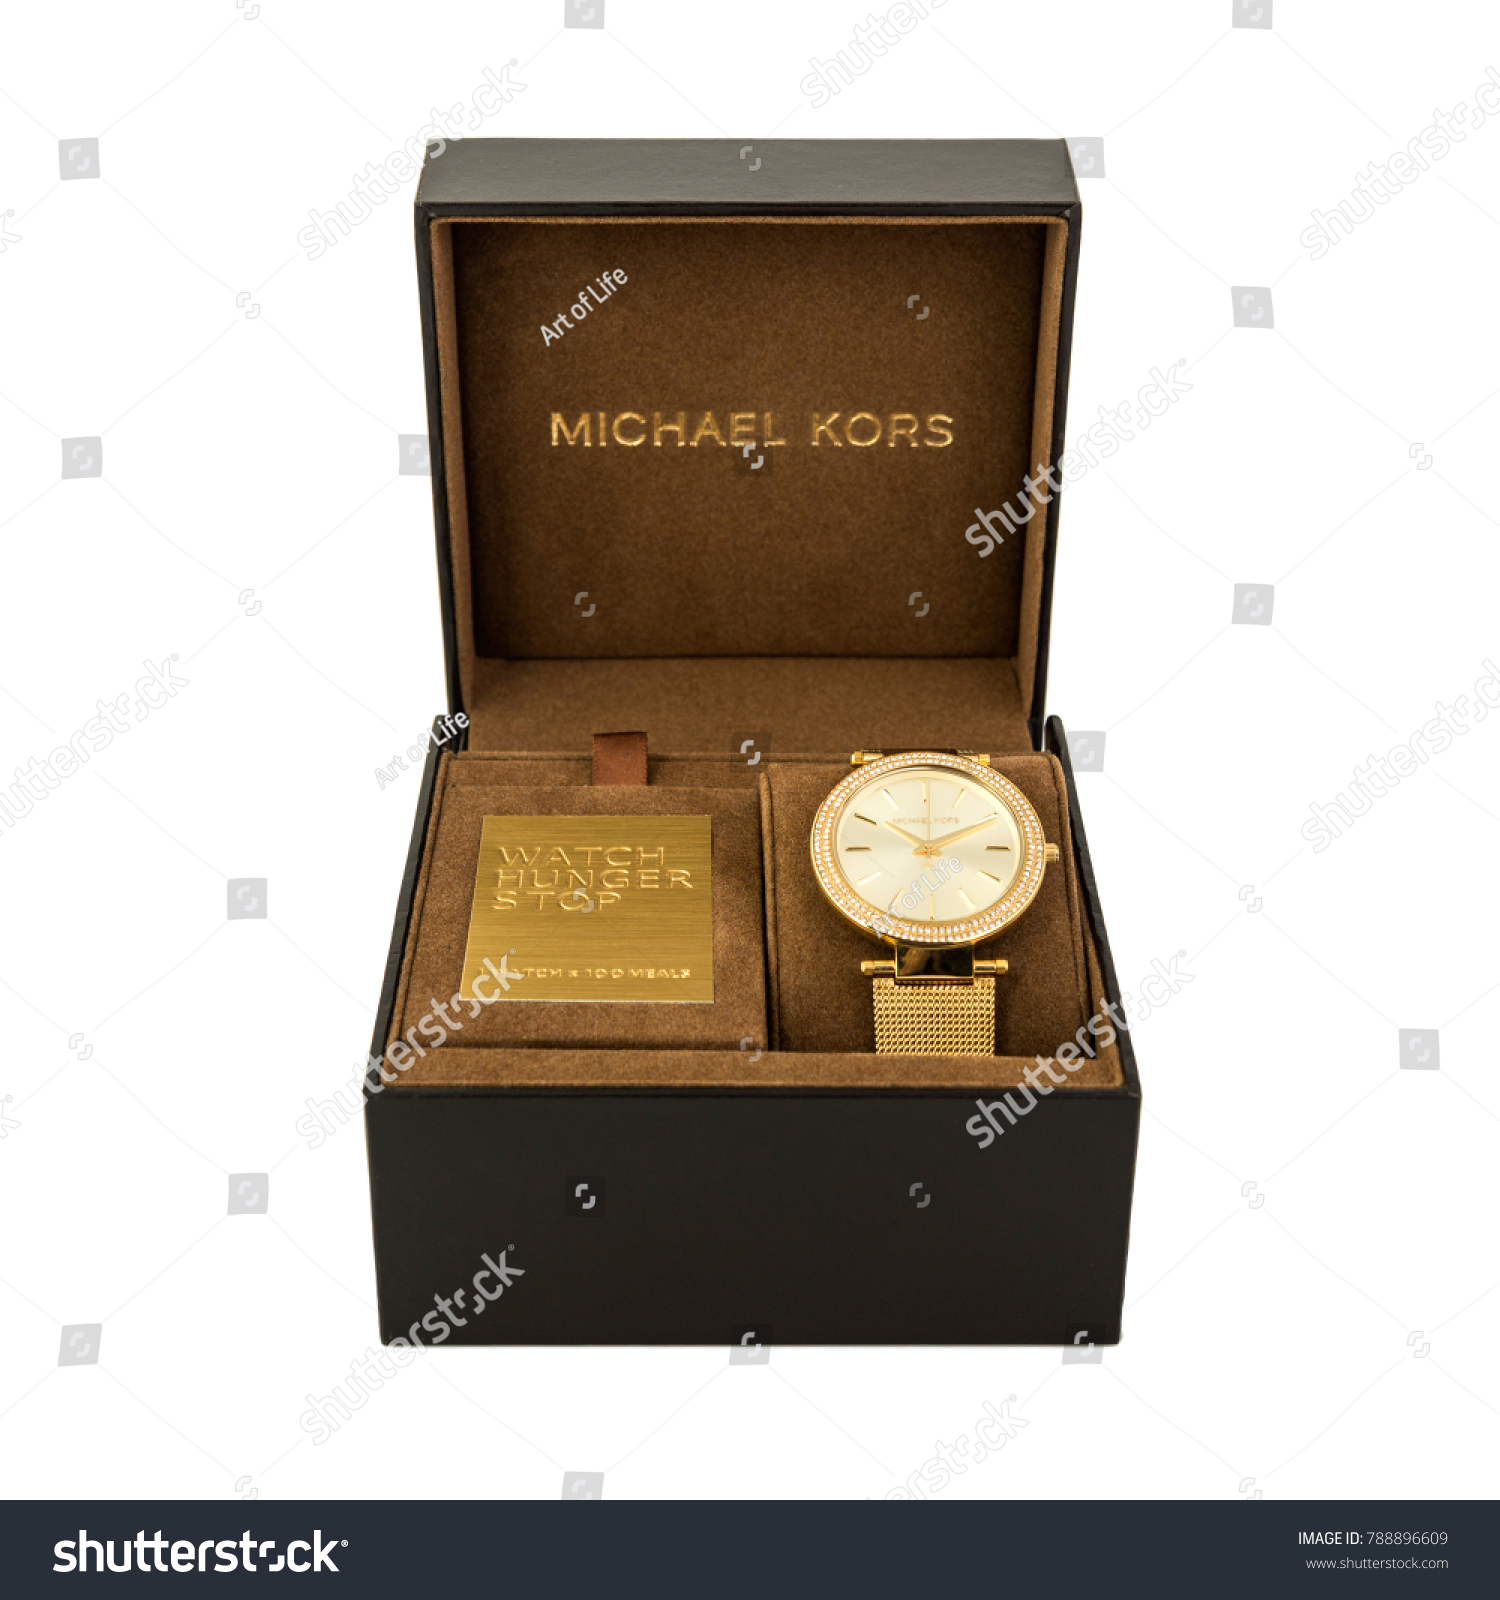 michael kors original box